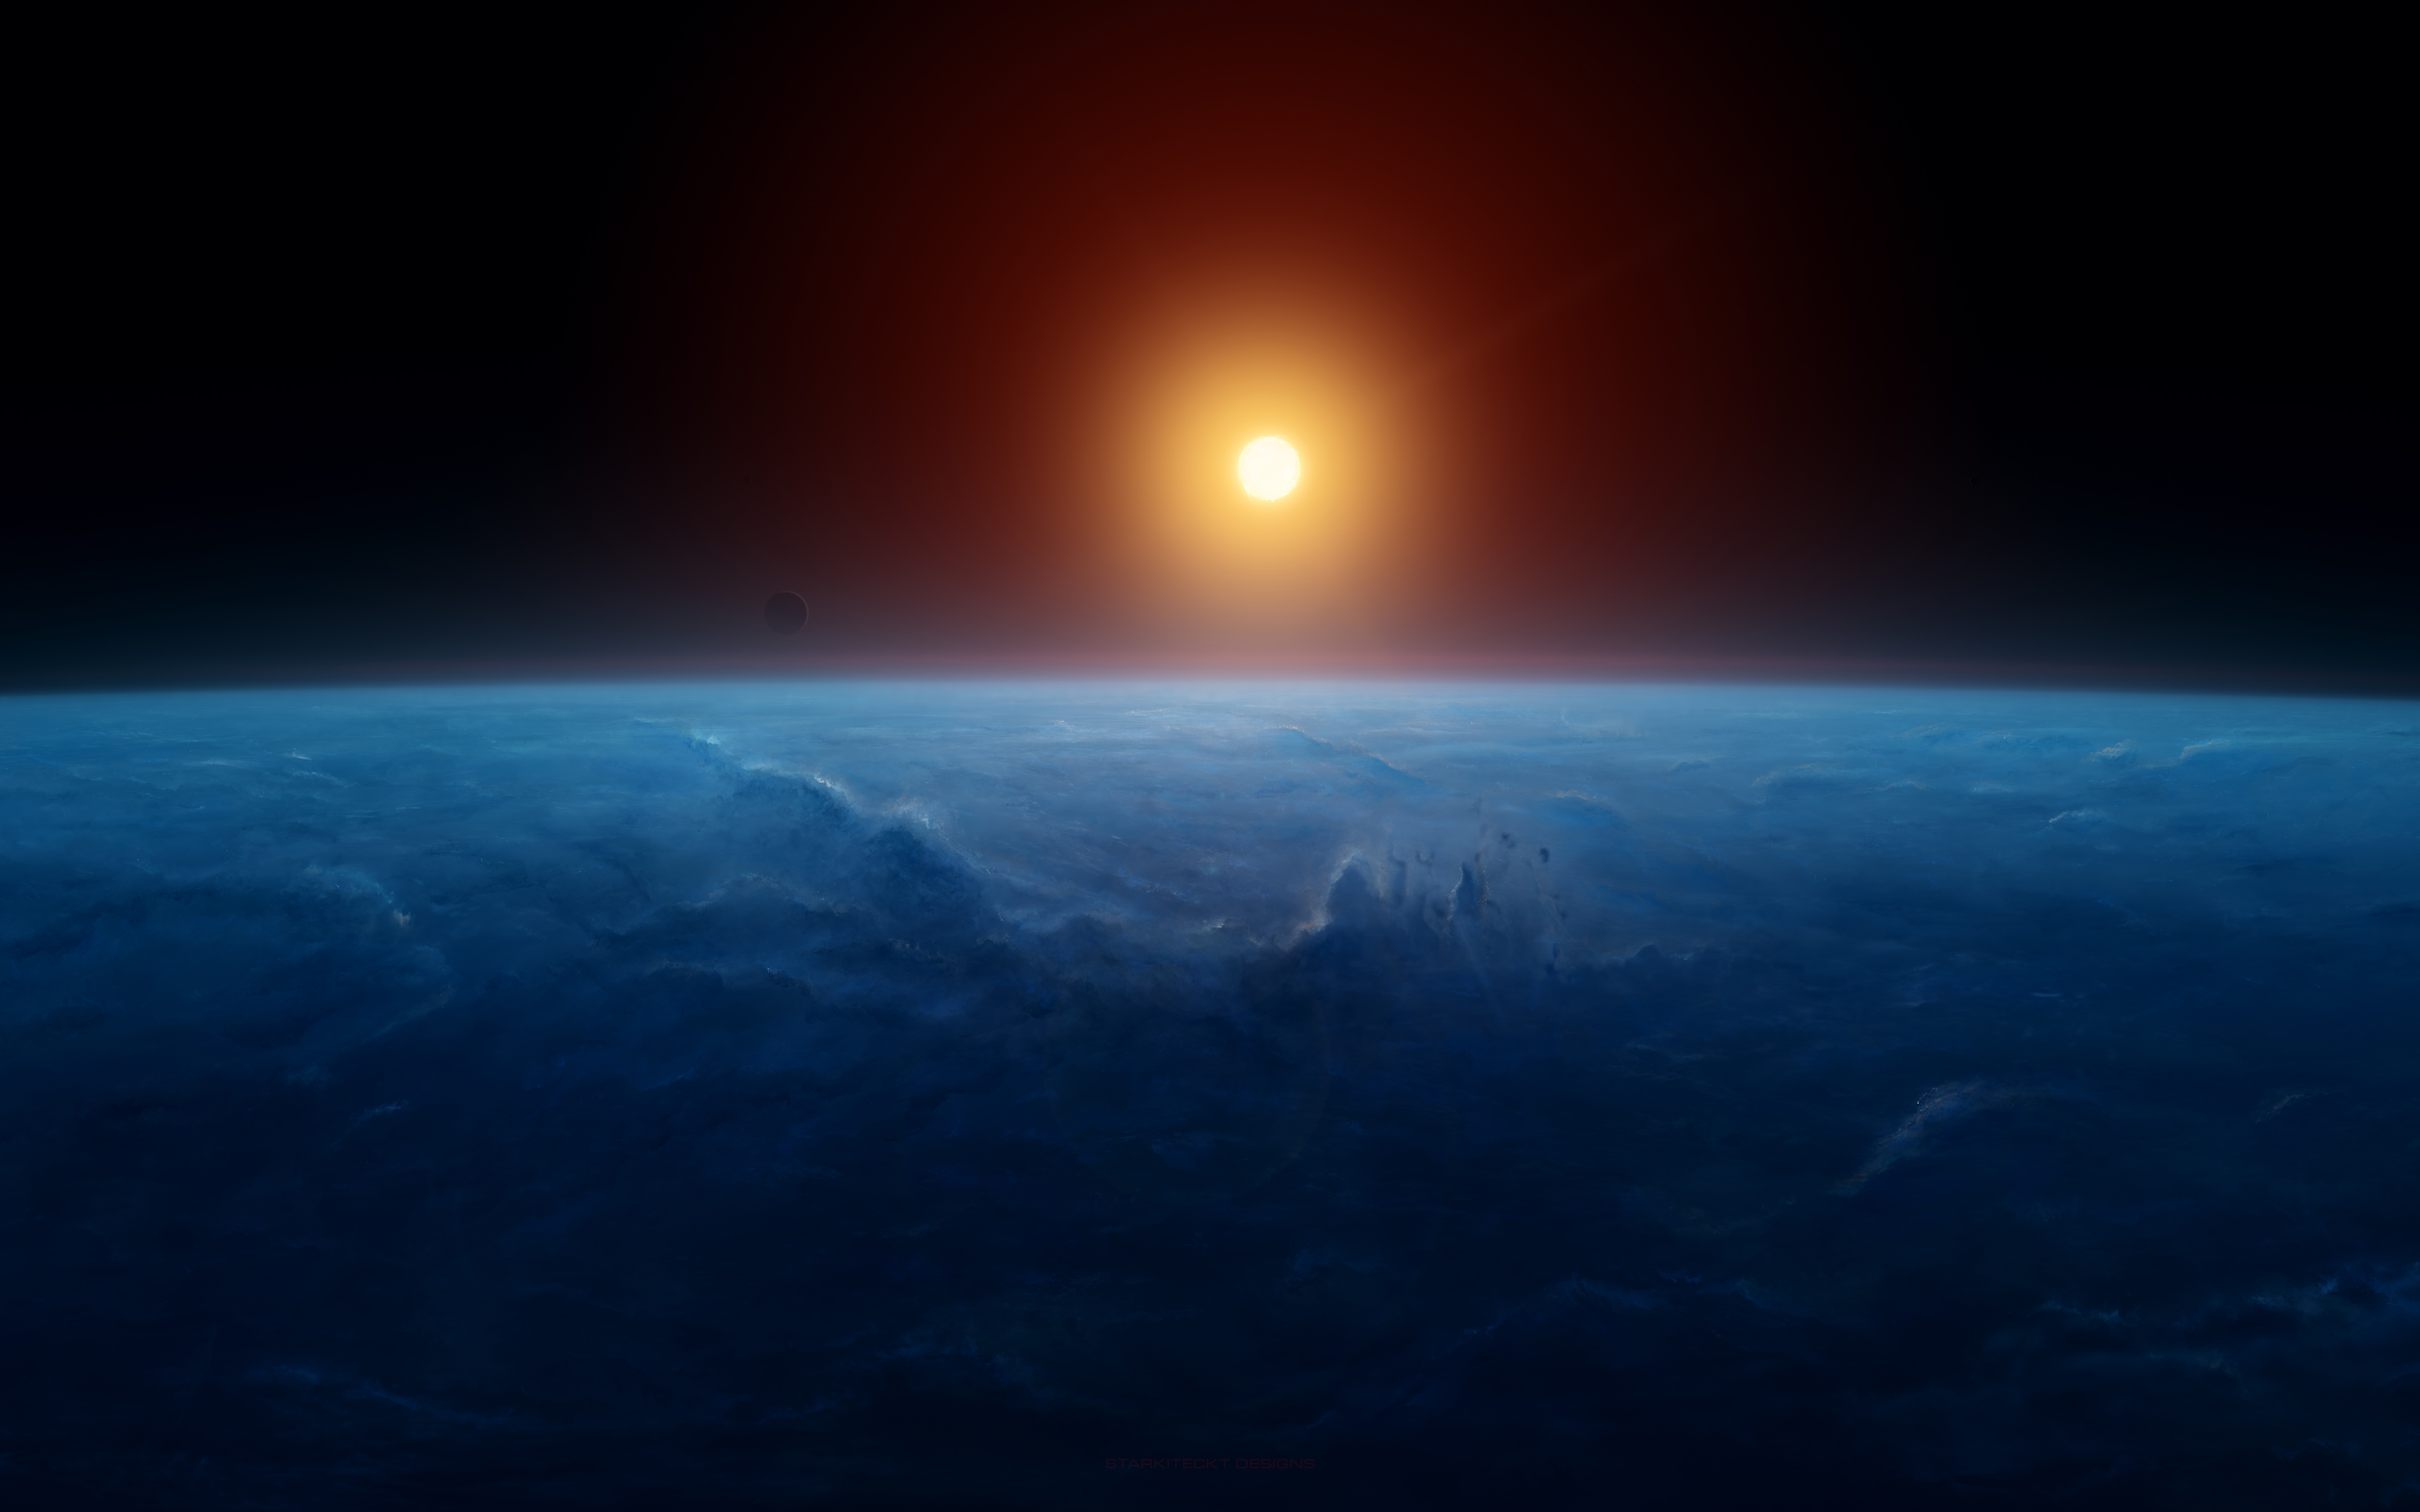 Sunrise Horizon Earth 4K 8K6850911890 - Sunrise Horizon Earth 4K 8K - sunrise, Horizon, Earth, Deer